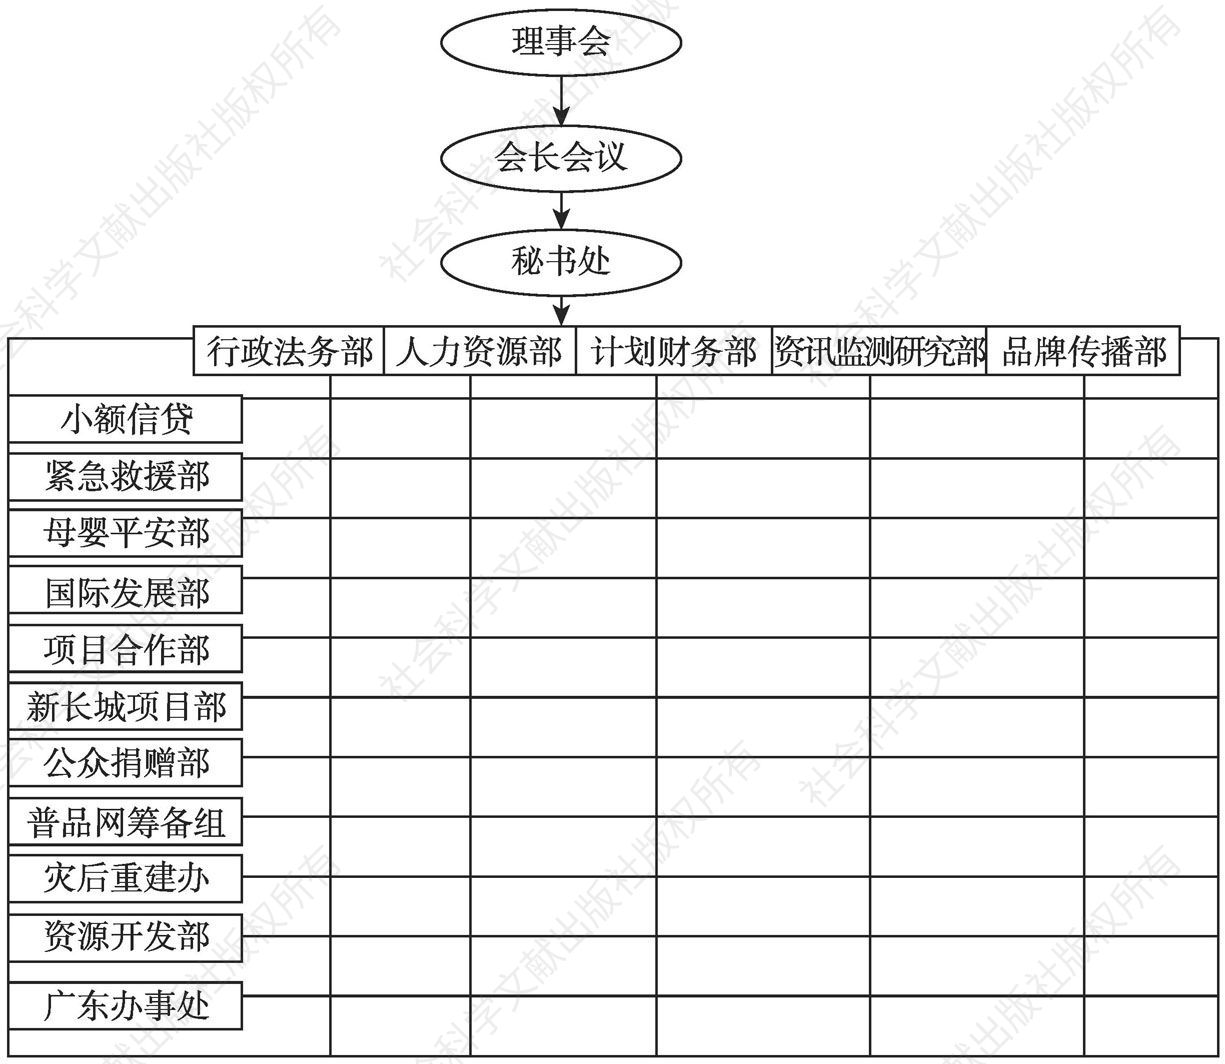 图1-1 中国扶贫基金会的部门设置